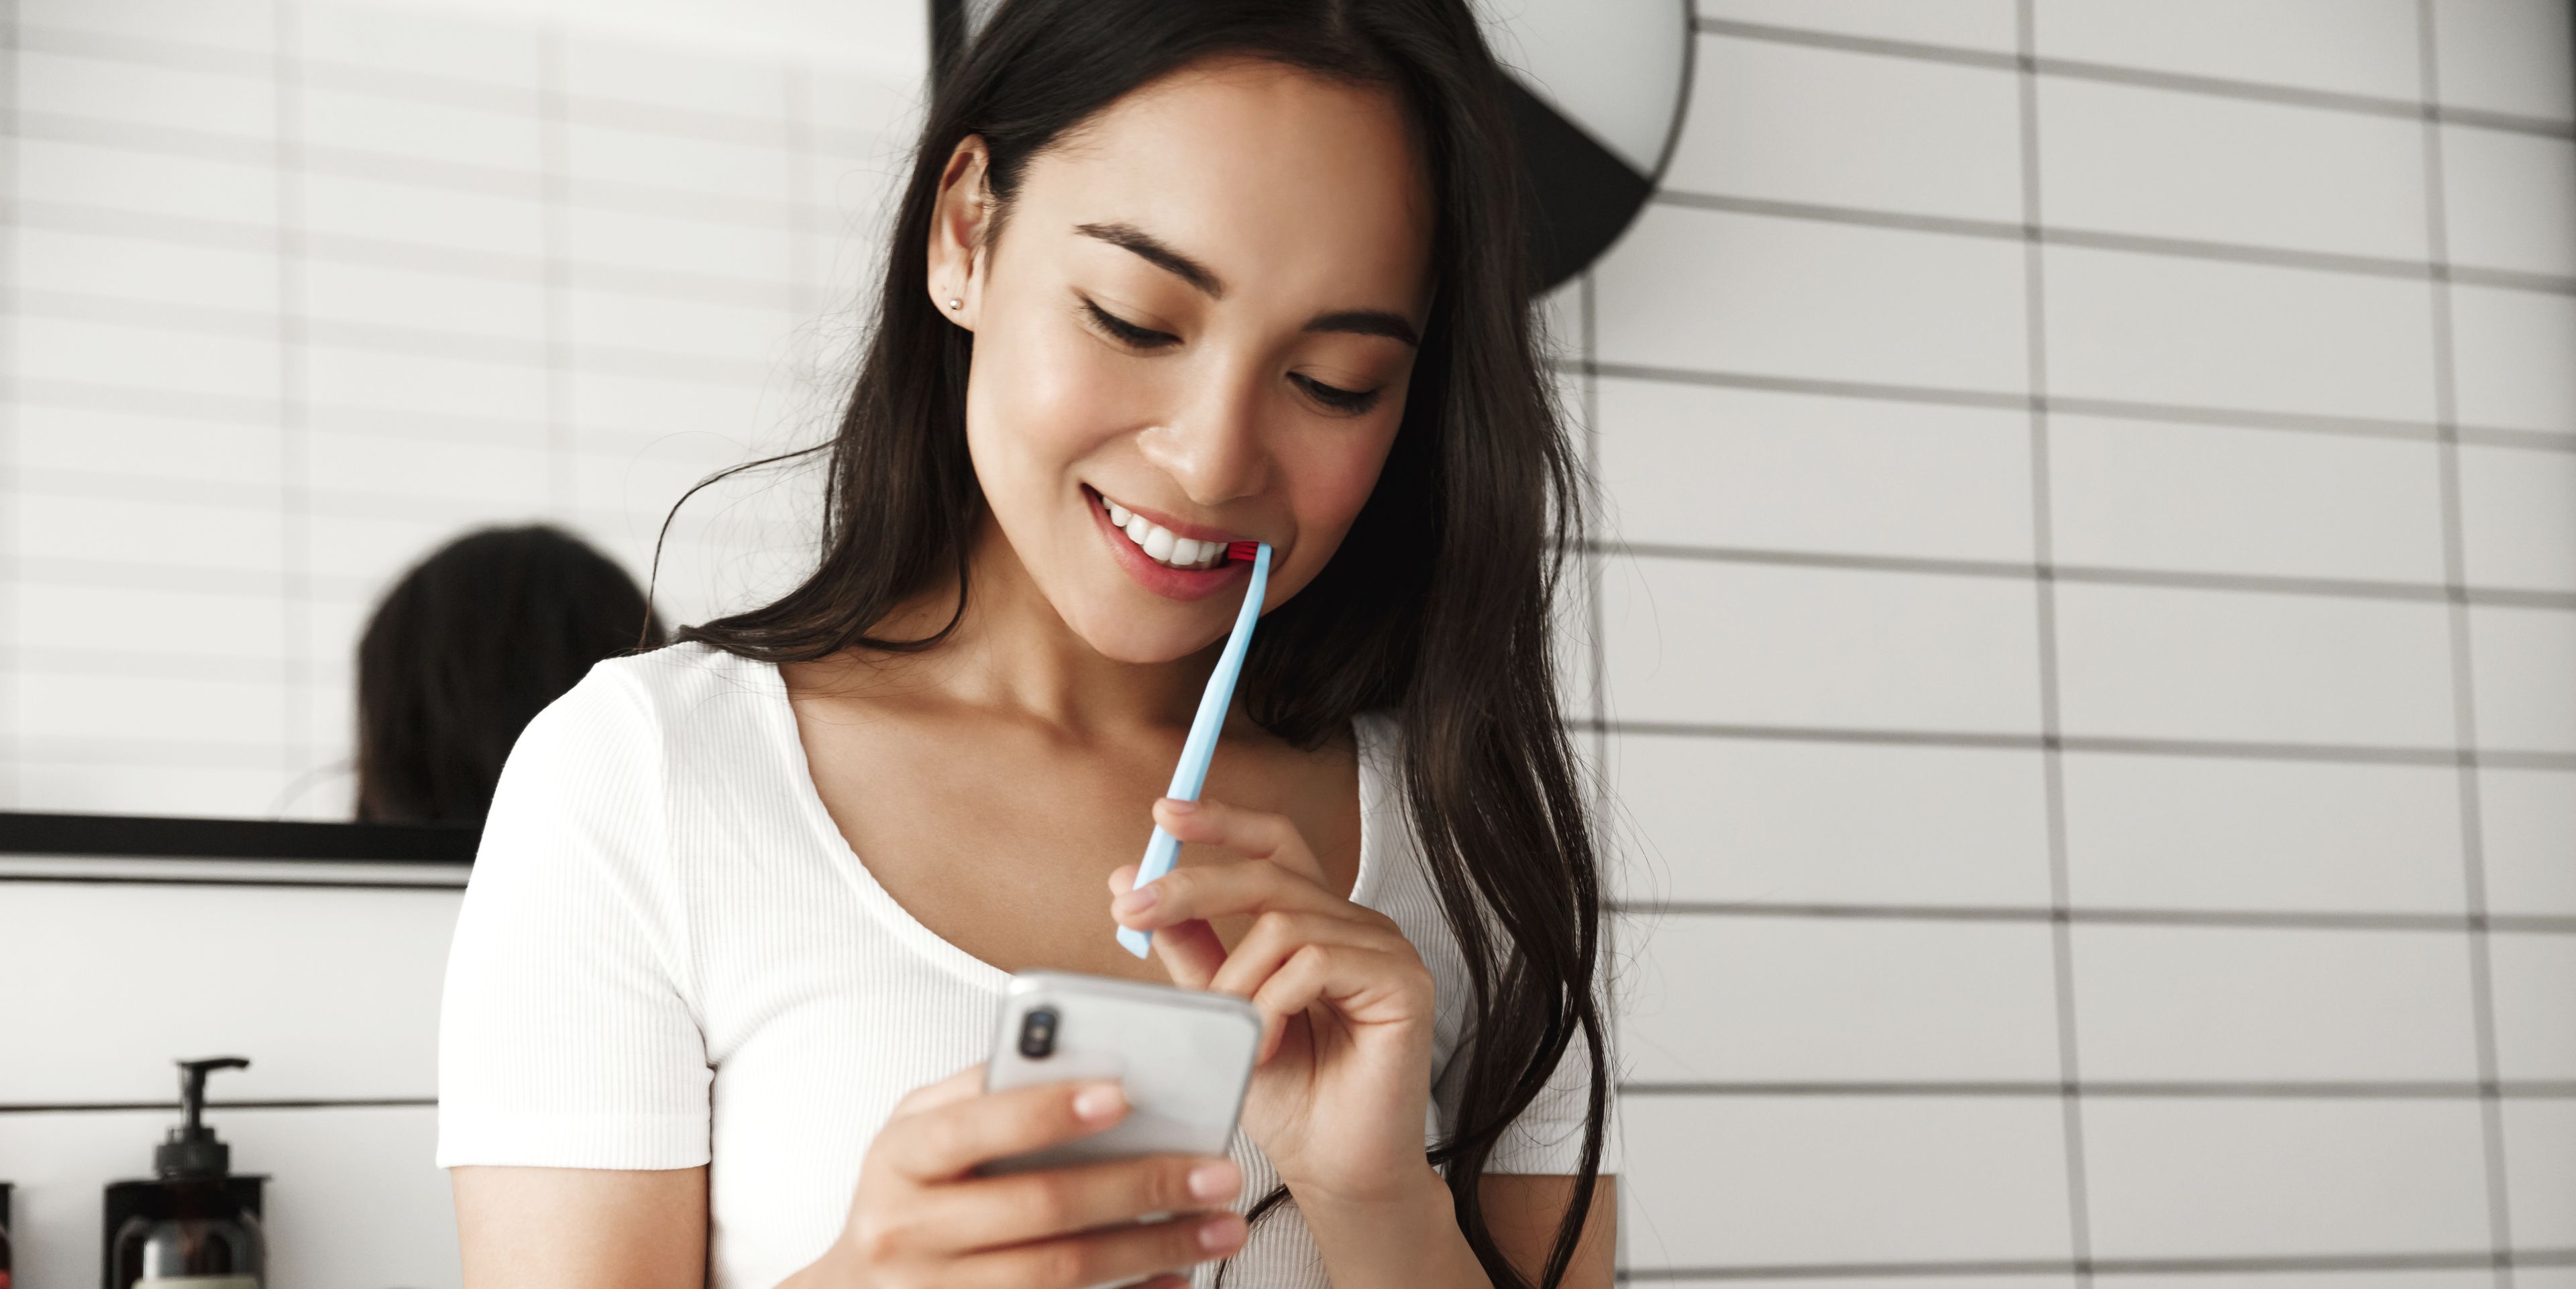 Une femme regarde son téléphone pendant qu'elle se brosse les dents